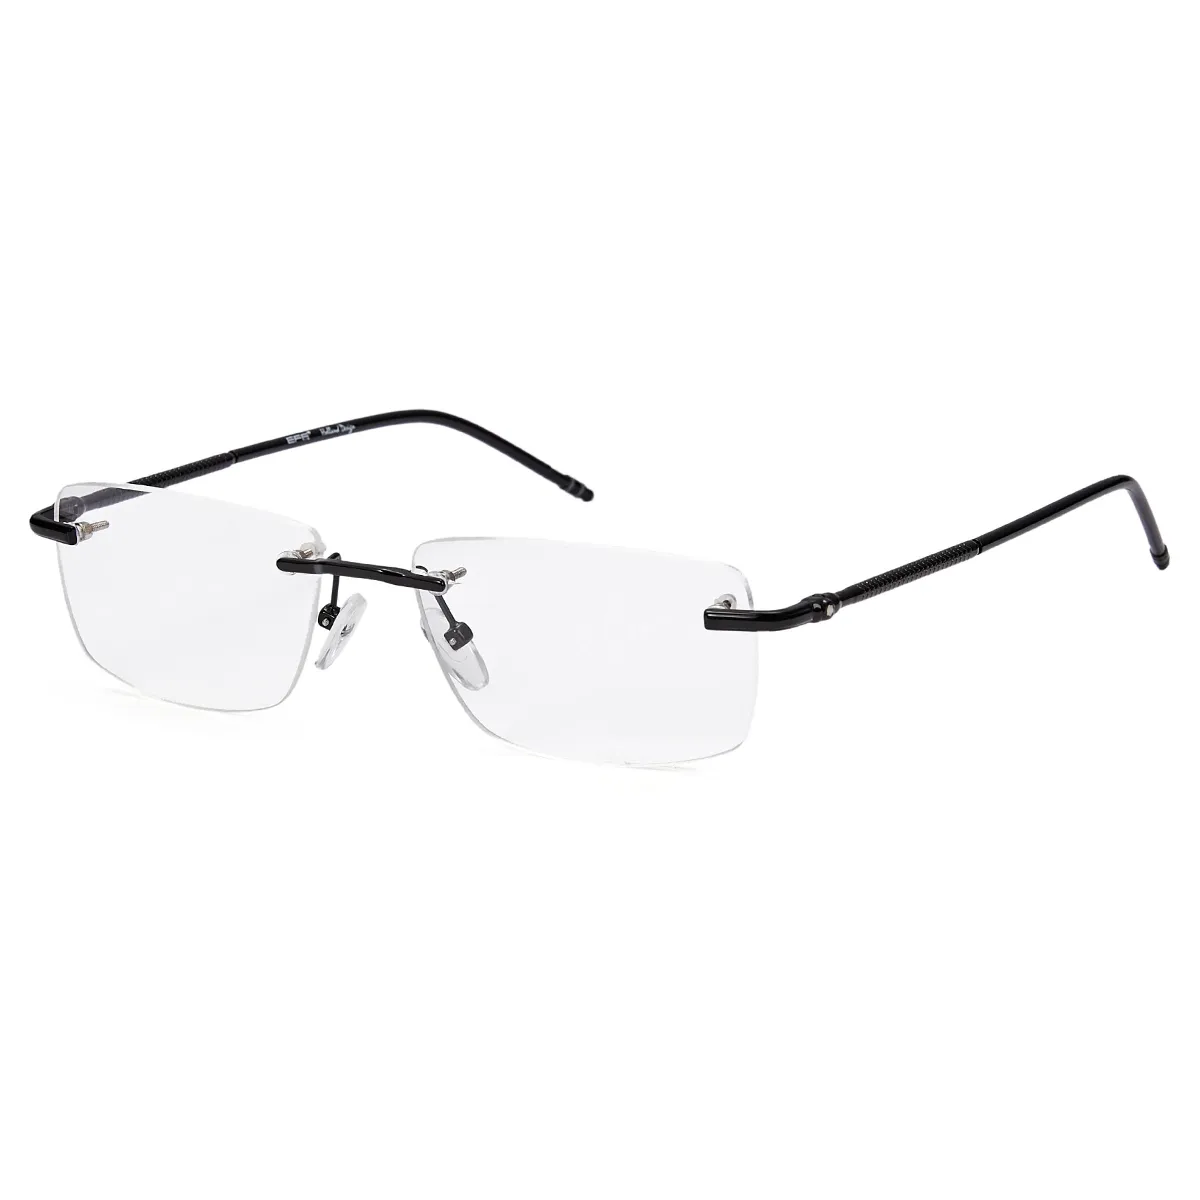 Greene - Rectangle Black Glasses for Men & Women